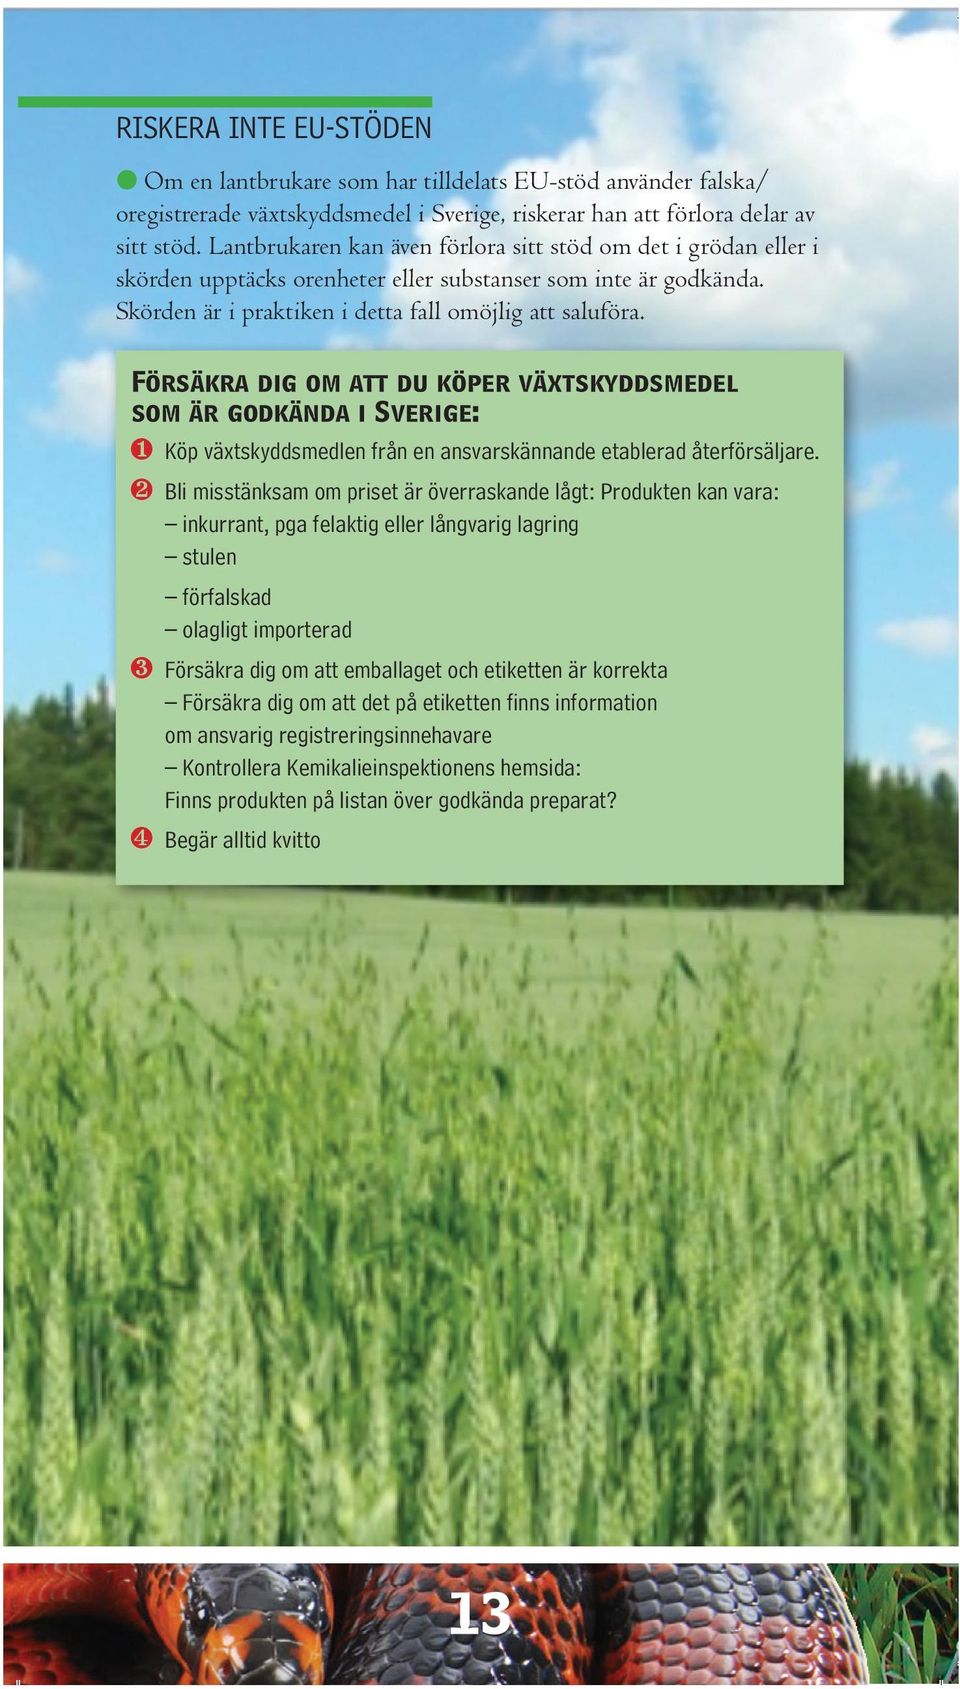 Försäkra dig om att du köper växtskyddsmedel som är godkända i Sverige: ❶ Köp växtskyddsmedlen från en ansvarskännande etablerad återförsäljare.